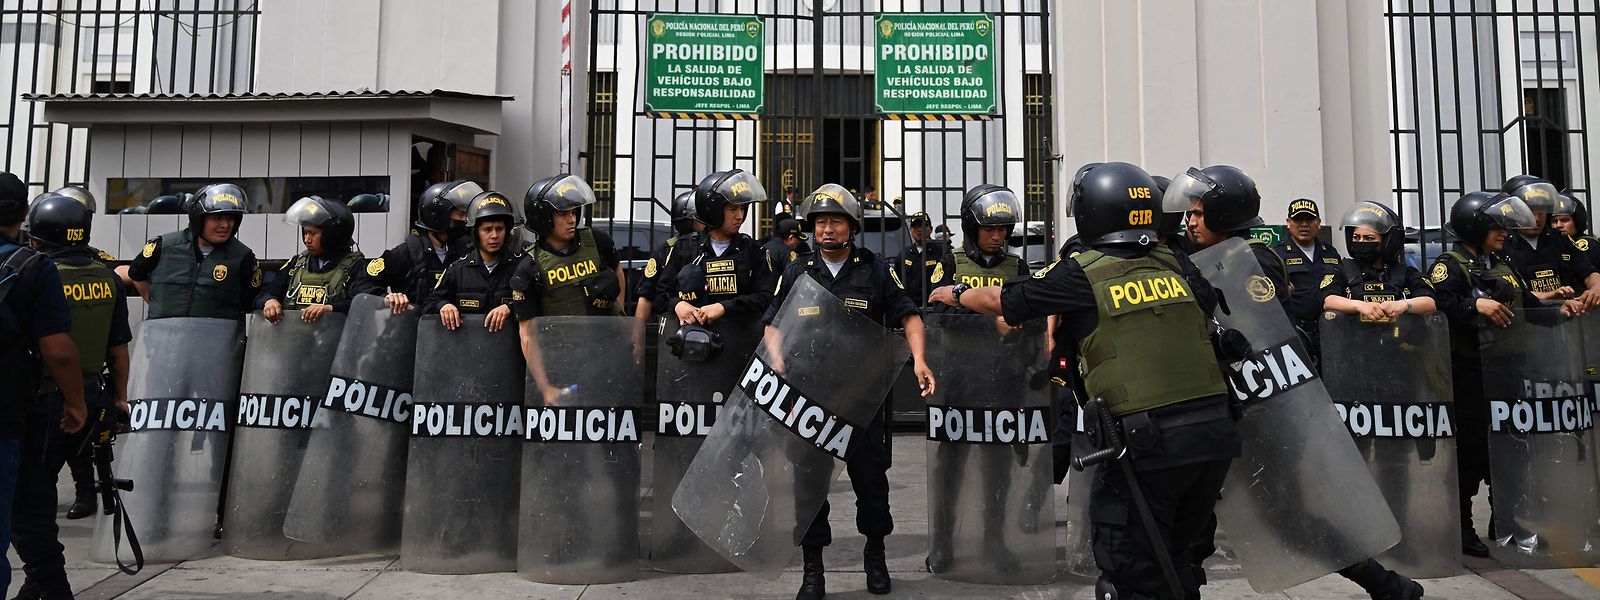 Castillo soll im Zentrum der Hauptstadt Lima festgesetzt worden sein.